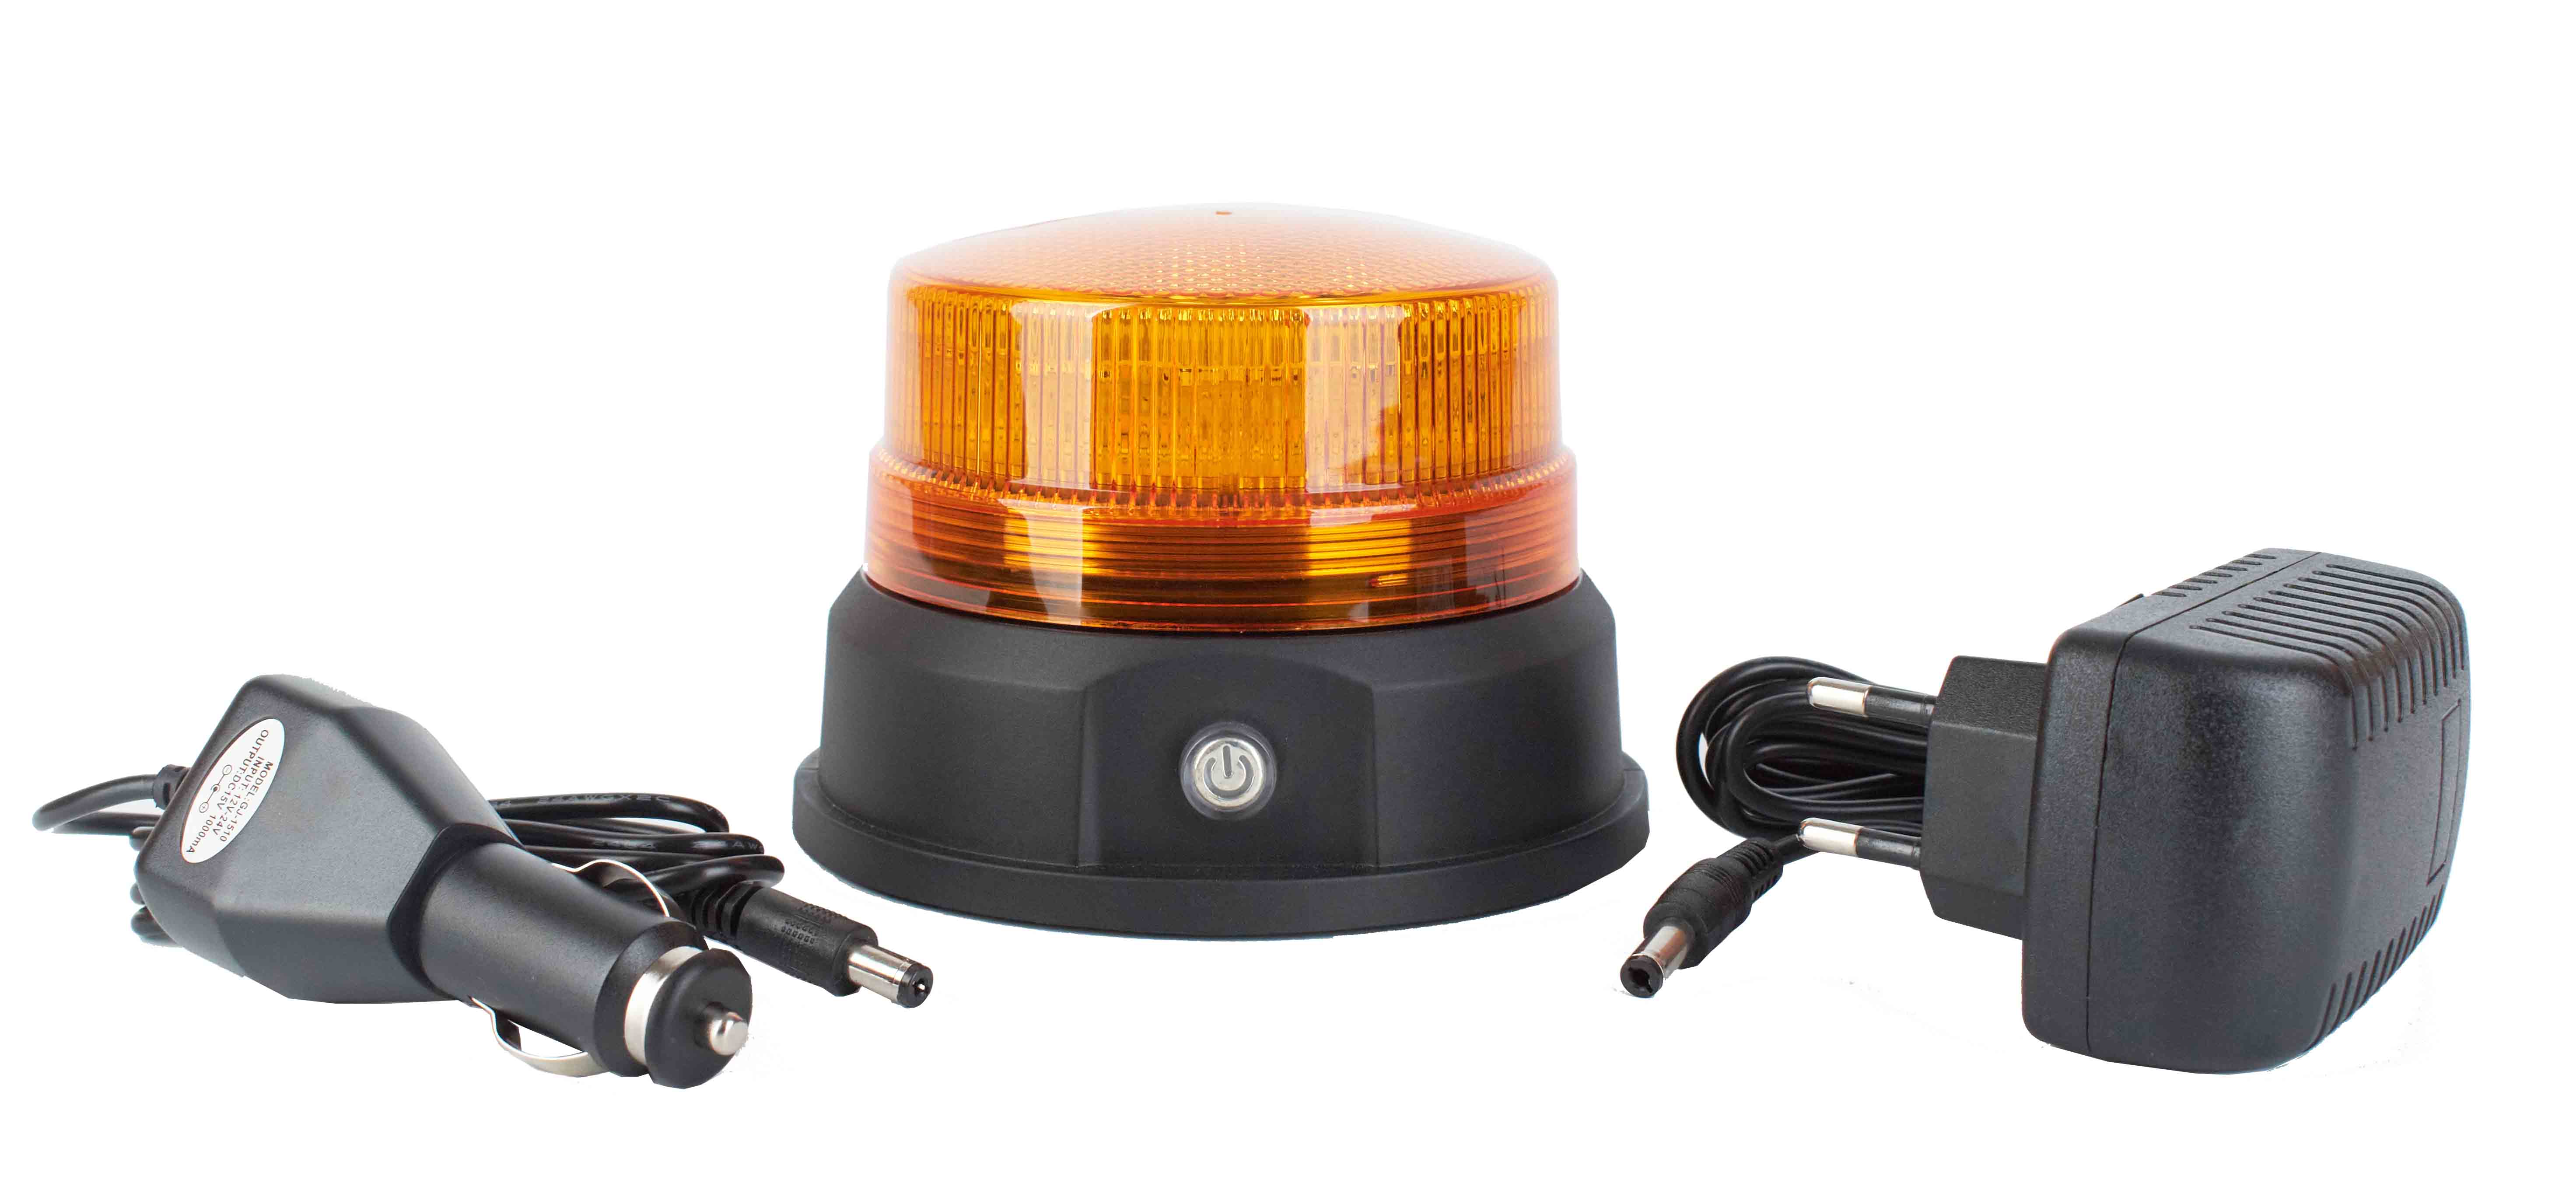 Gyrophare LED Triple étage : achetez au meilleur prix sur Proteclight